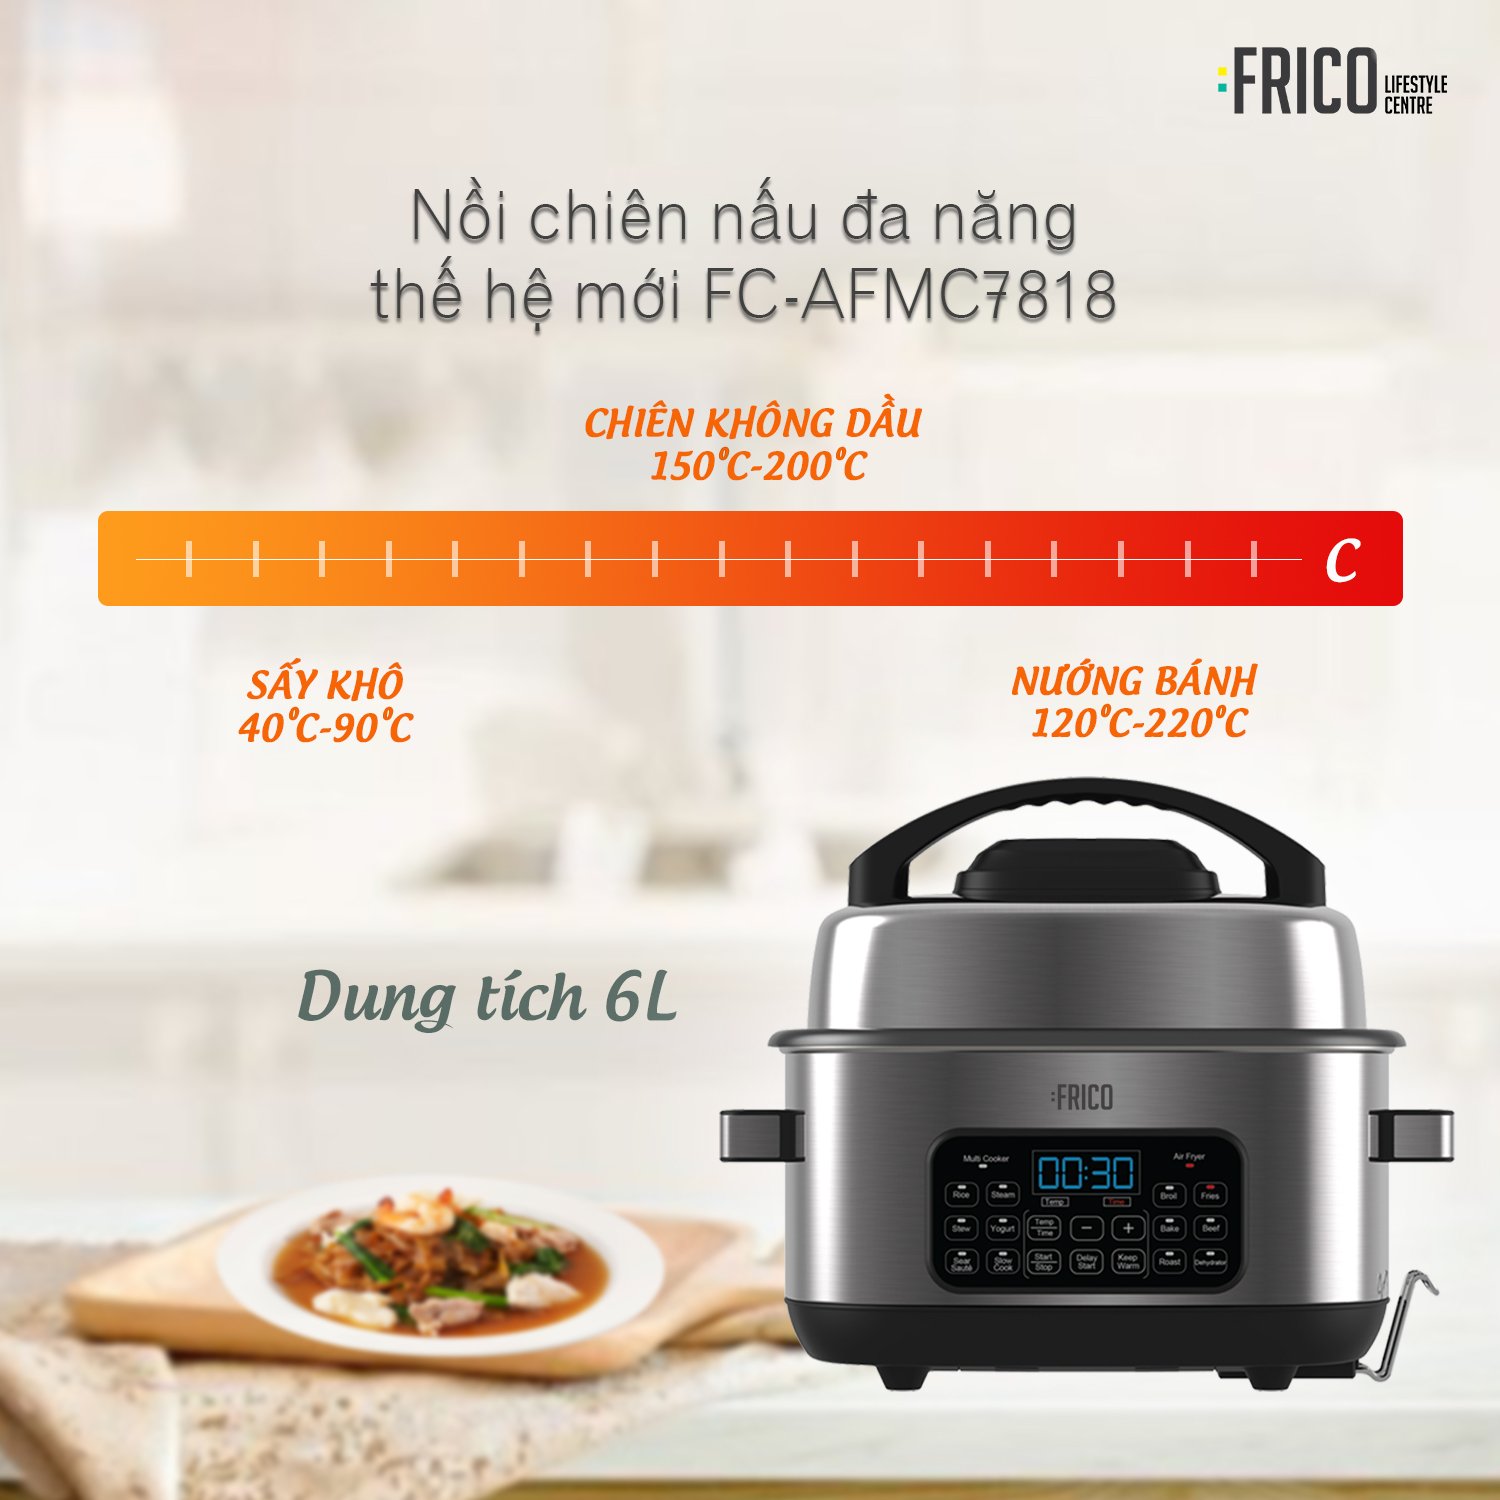 Nồi chiên nấu đa năng thế hệ mới FRICO FC-AFMC7818  - Hàng nhập khẩu